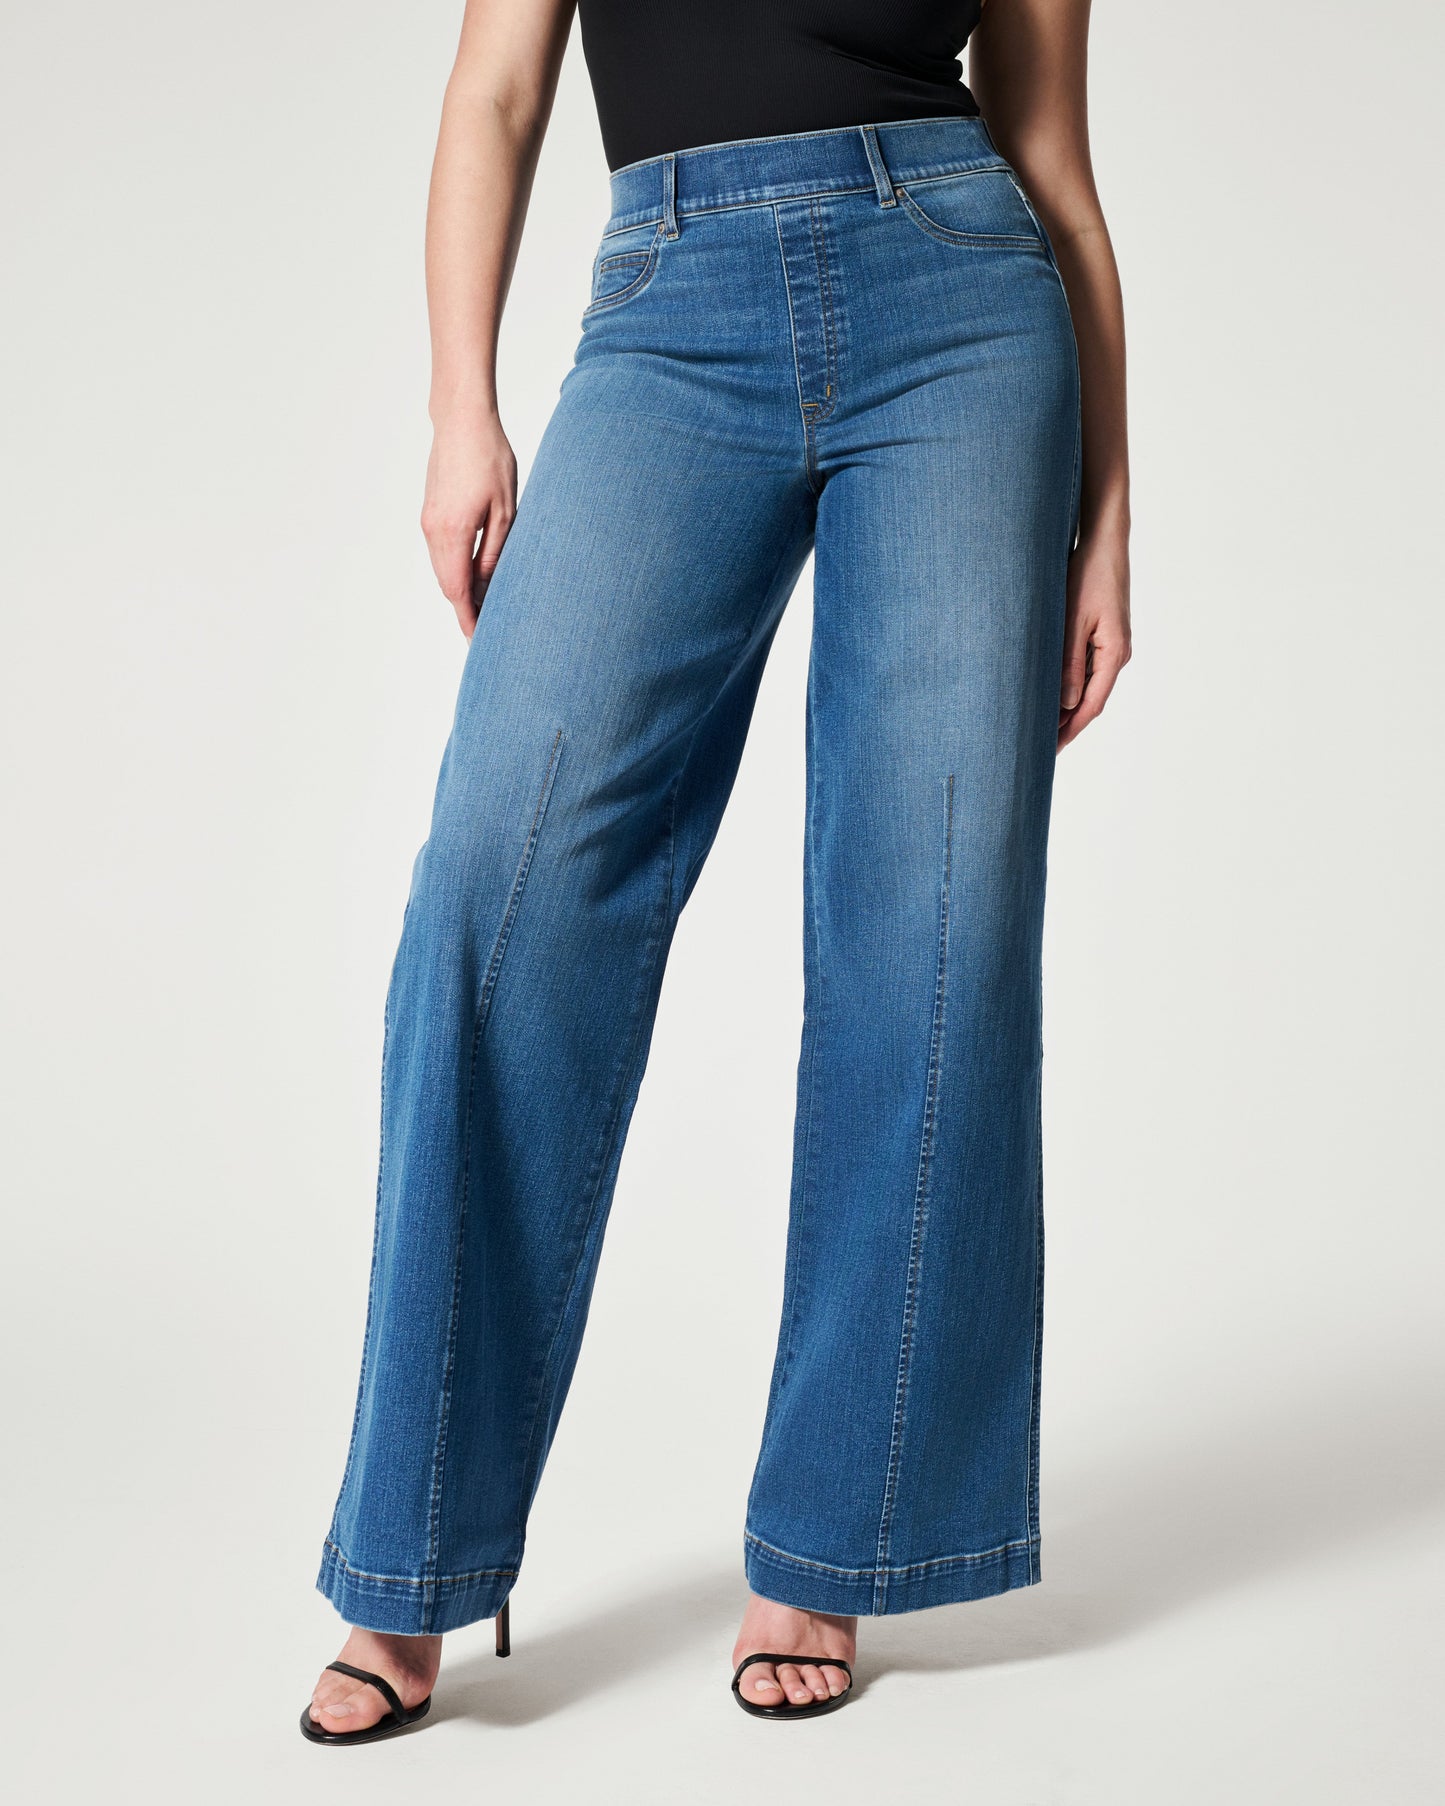 Jeans mit breitem Bein und Nahtdetail vorne, in Vintage-Indigo